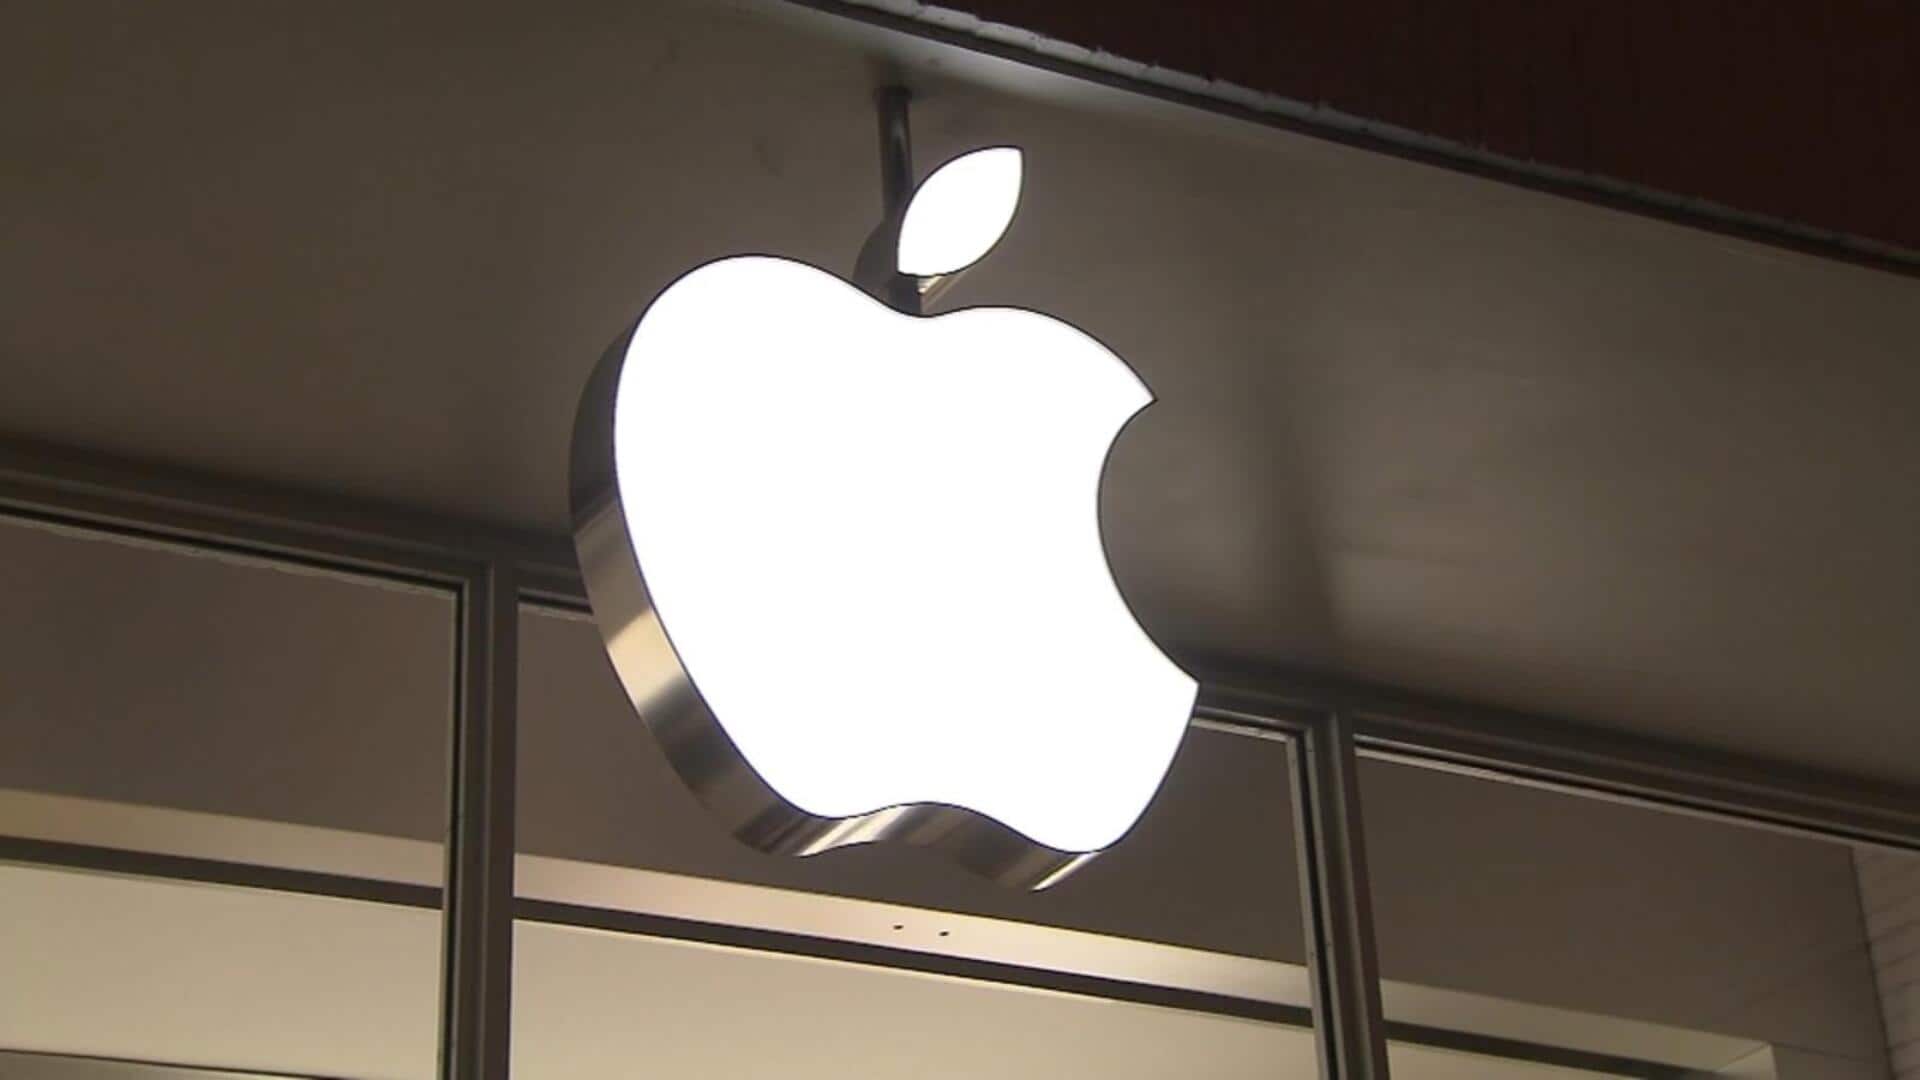 How Apple's lock-in problem led to antitrust lawsuit by DOJ